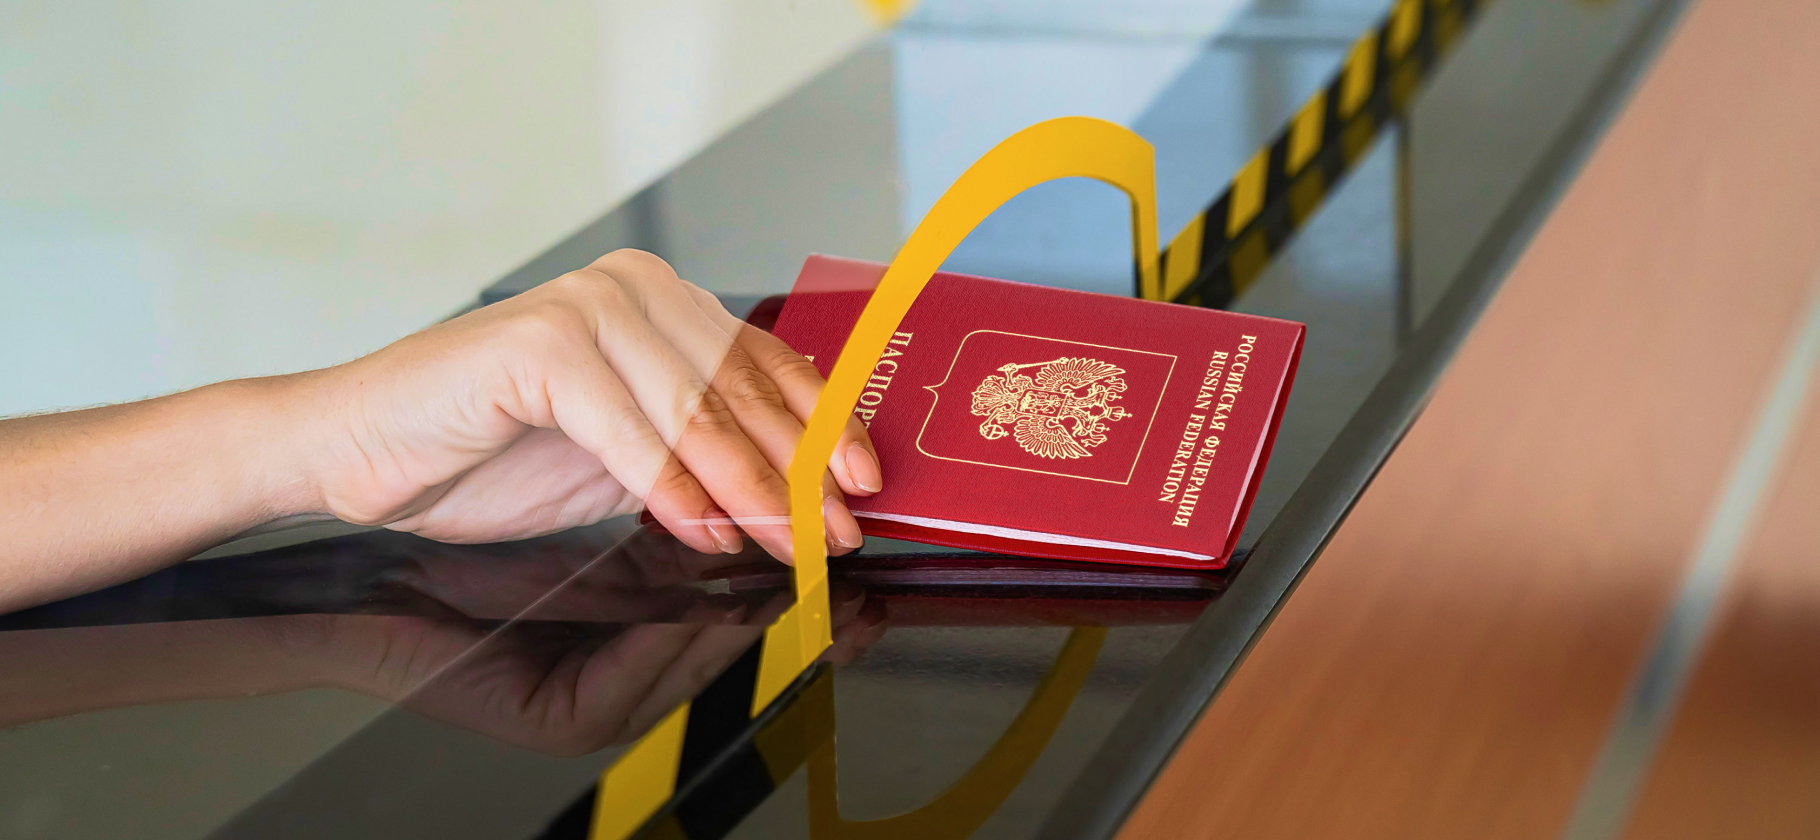 «Консул сам позвонил мне на мобильный»: 3 истории о получении шенгенской визы за границей